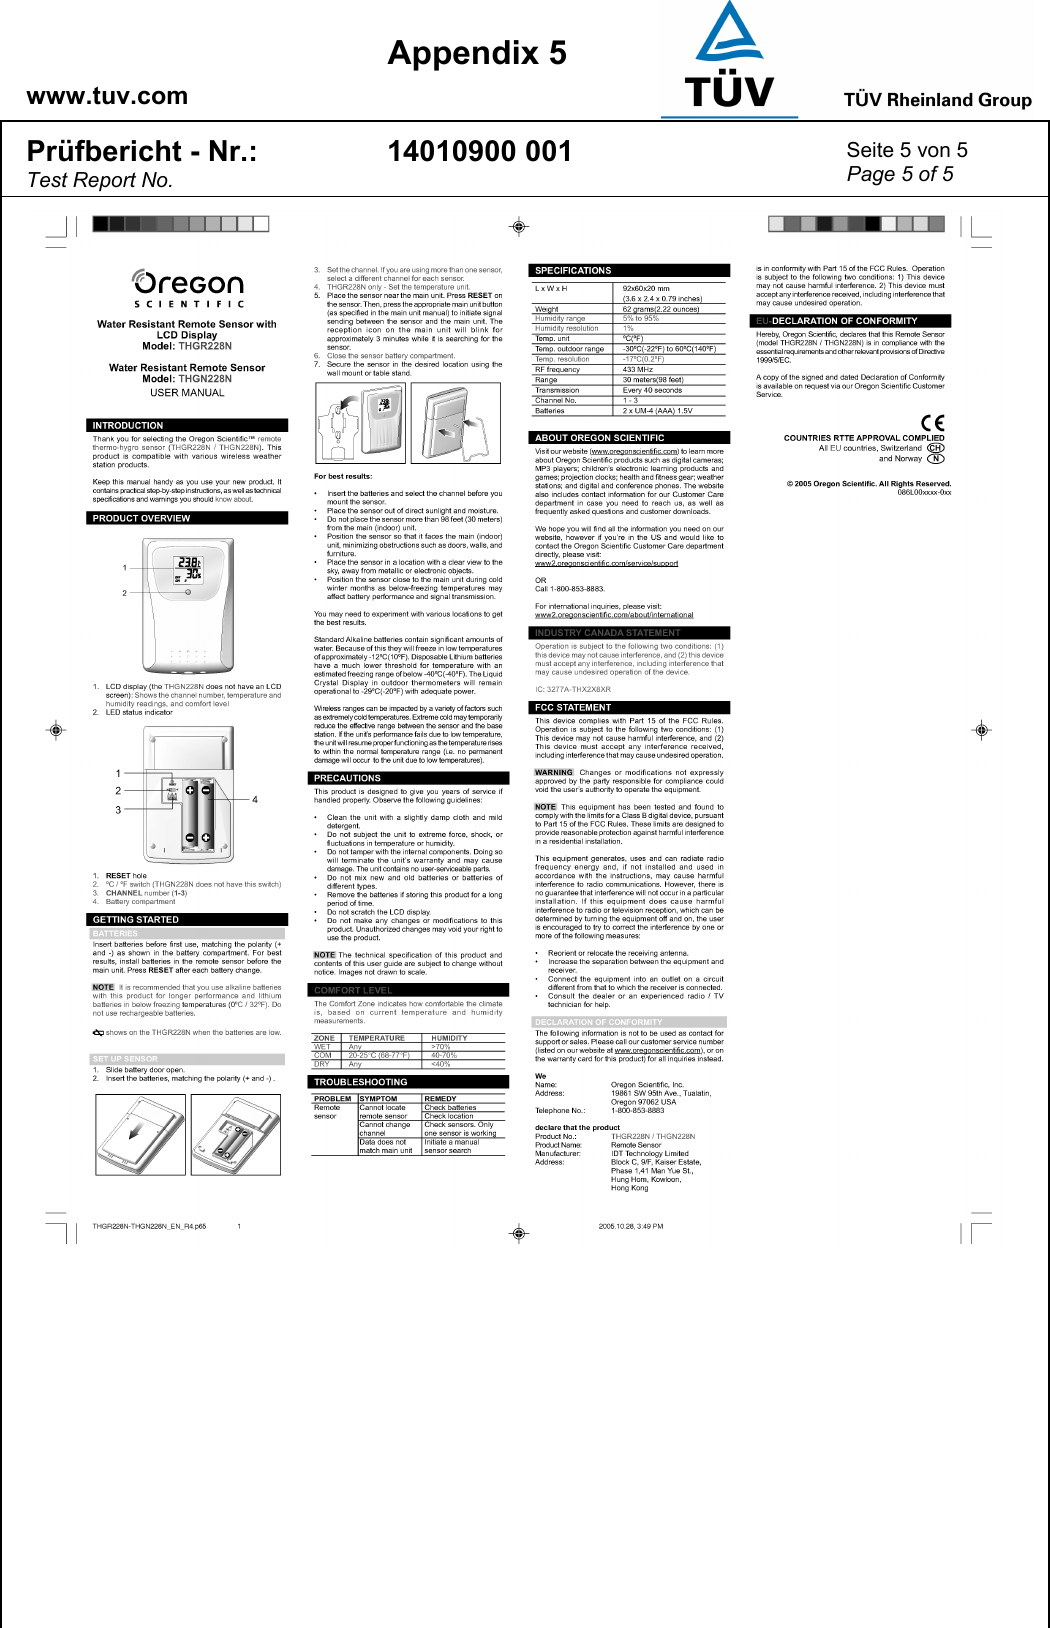    www.tuv.com  Appendix 5 Prüfbericht - Nr.: Test Report No. 14010900 001  Seite 5 von 5 Page 5 of 5    